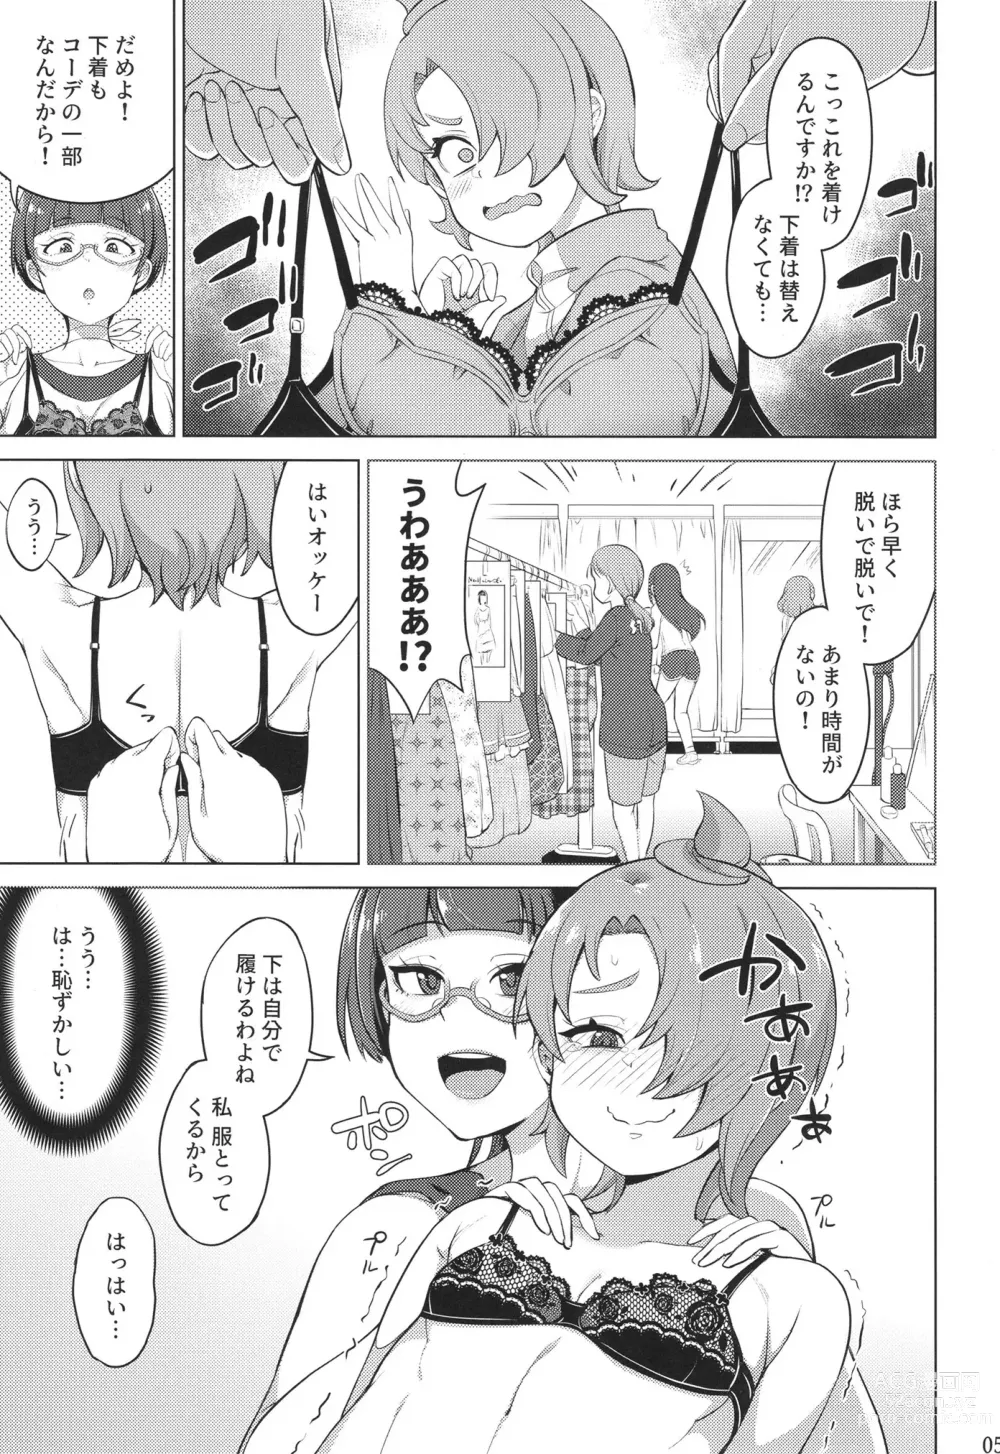 Page 5 of doujinshi Tsubasa Strike! 2